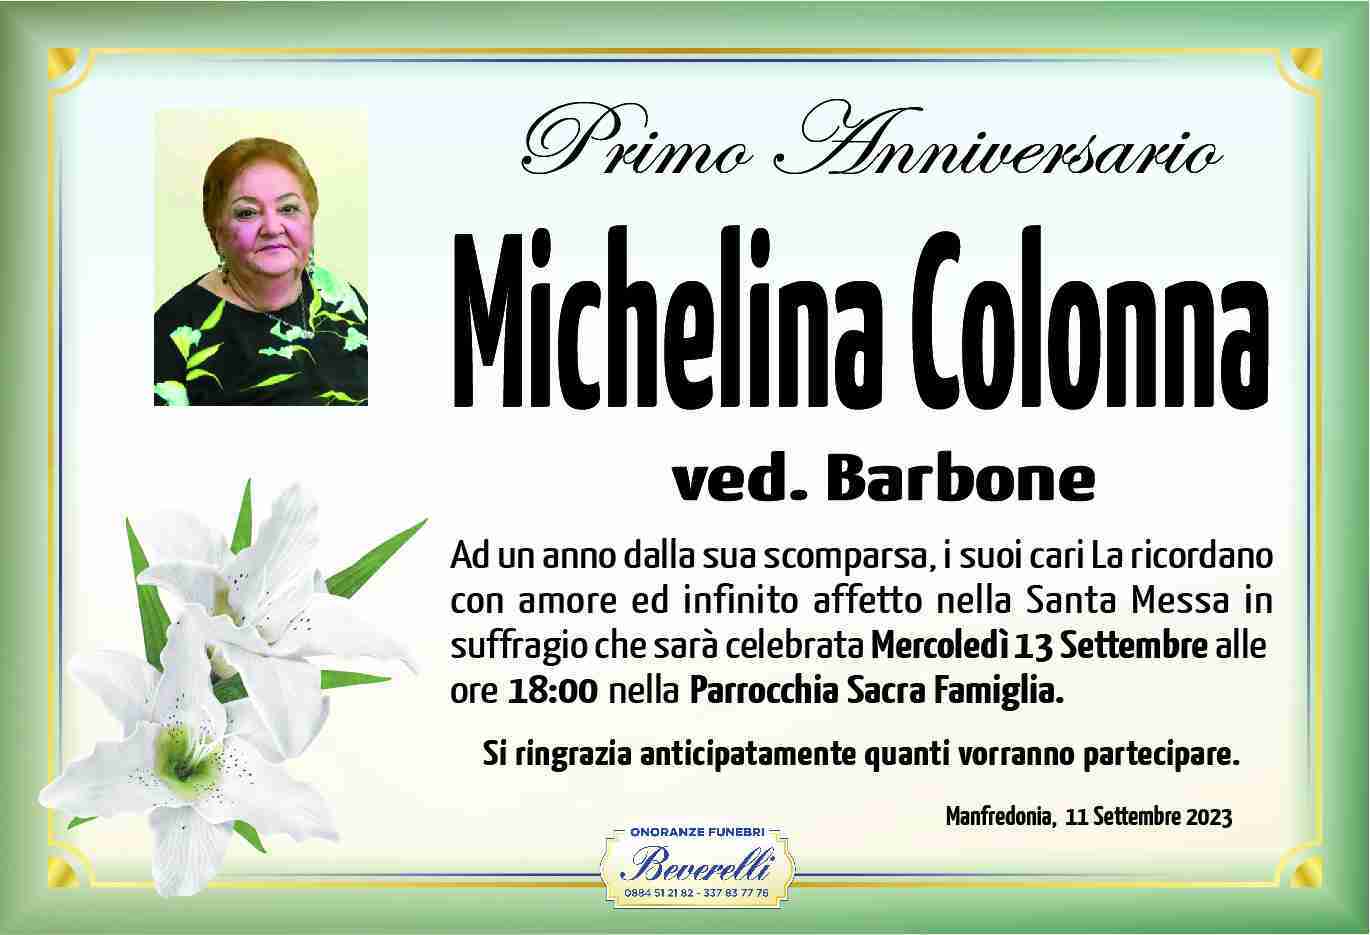 Michelina Colonna